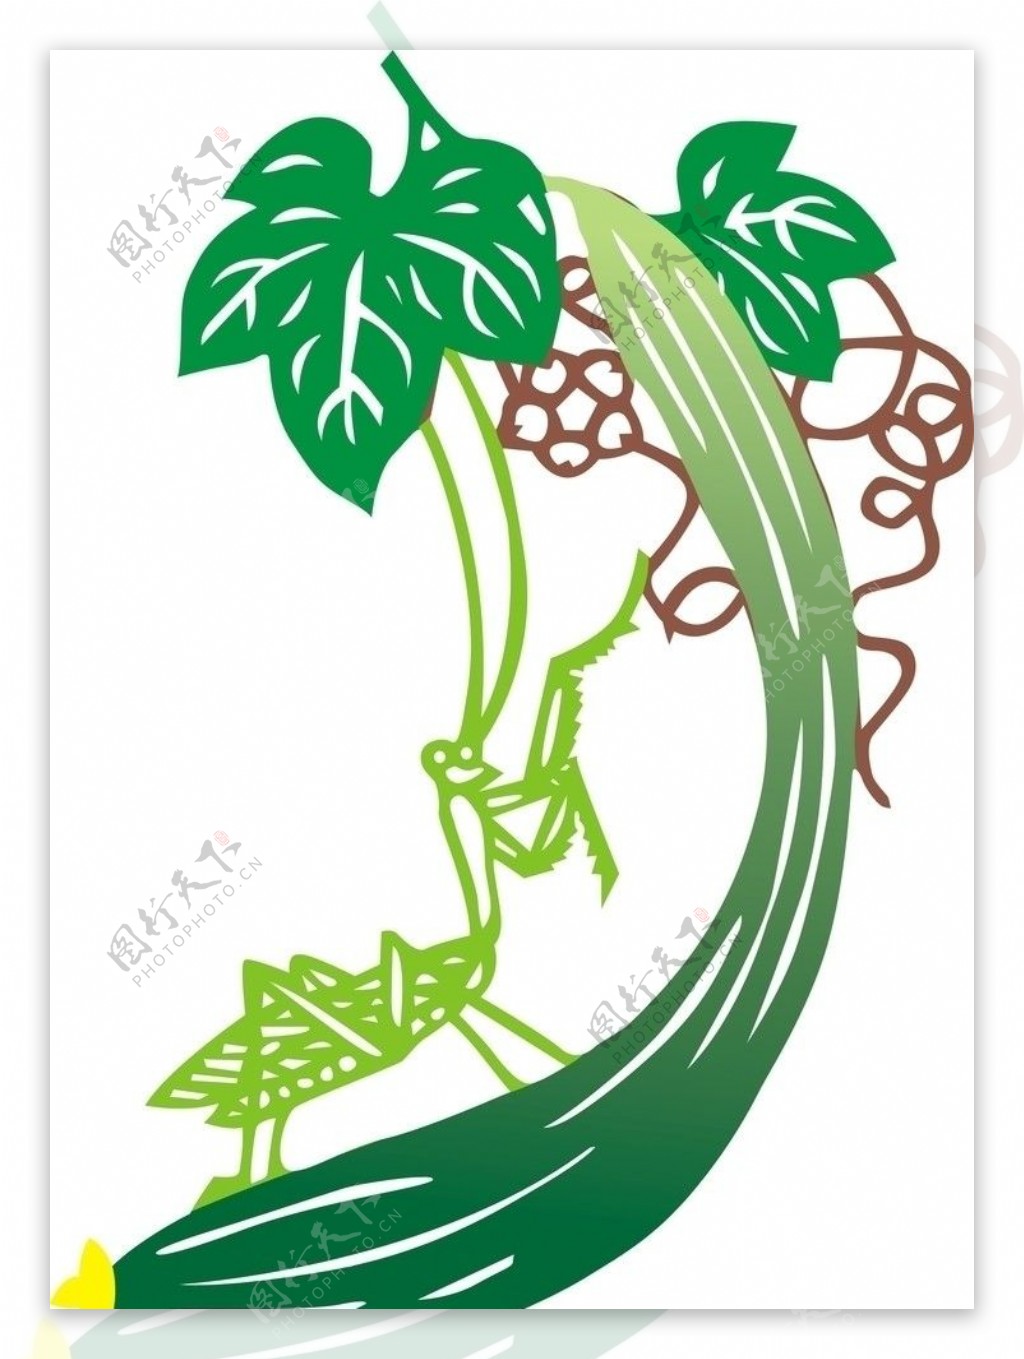 水墨絲瓜 兩根綠色絲瓜 開花的絲瓜 綠葉裝飾, 水墨兩根絲瓜插畫, 水墨絲瓜, 開花的絲瓜素材圖案，PSD和PNG圖片免費下載